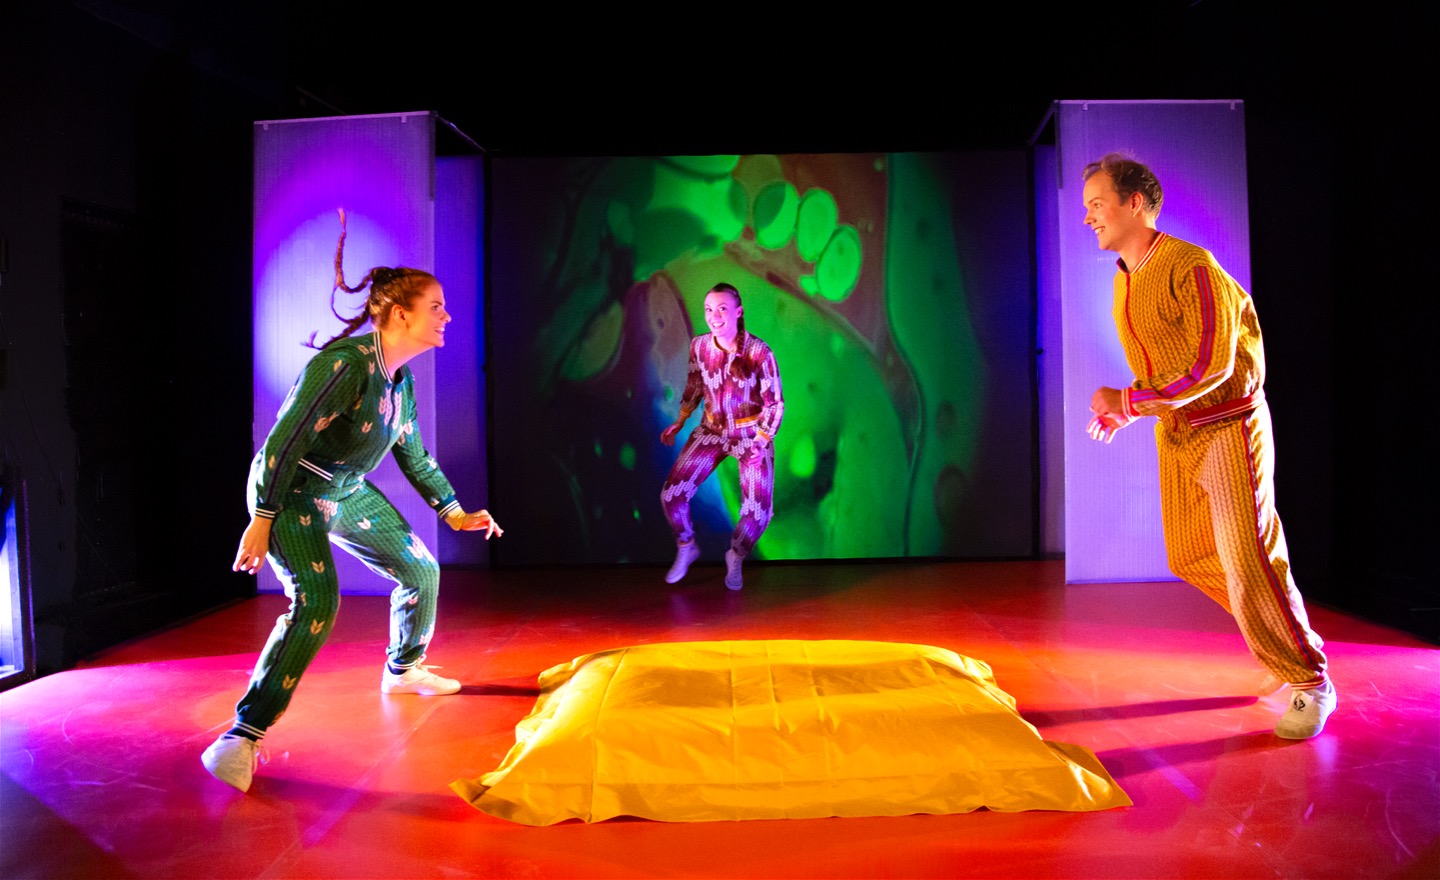 Bild från föreställningen Pirret. De tre skådespelarna jagar varandra runt en ul kudde. Scenografin är färgglad.